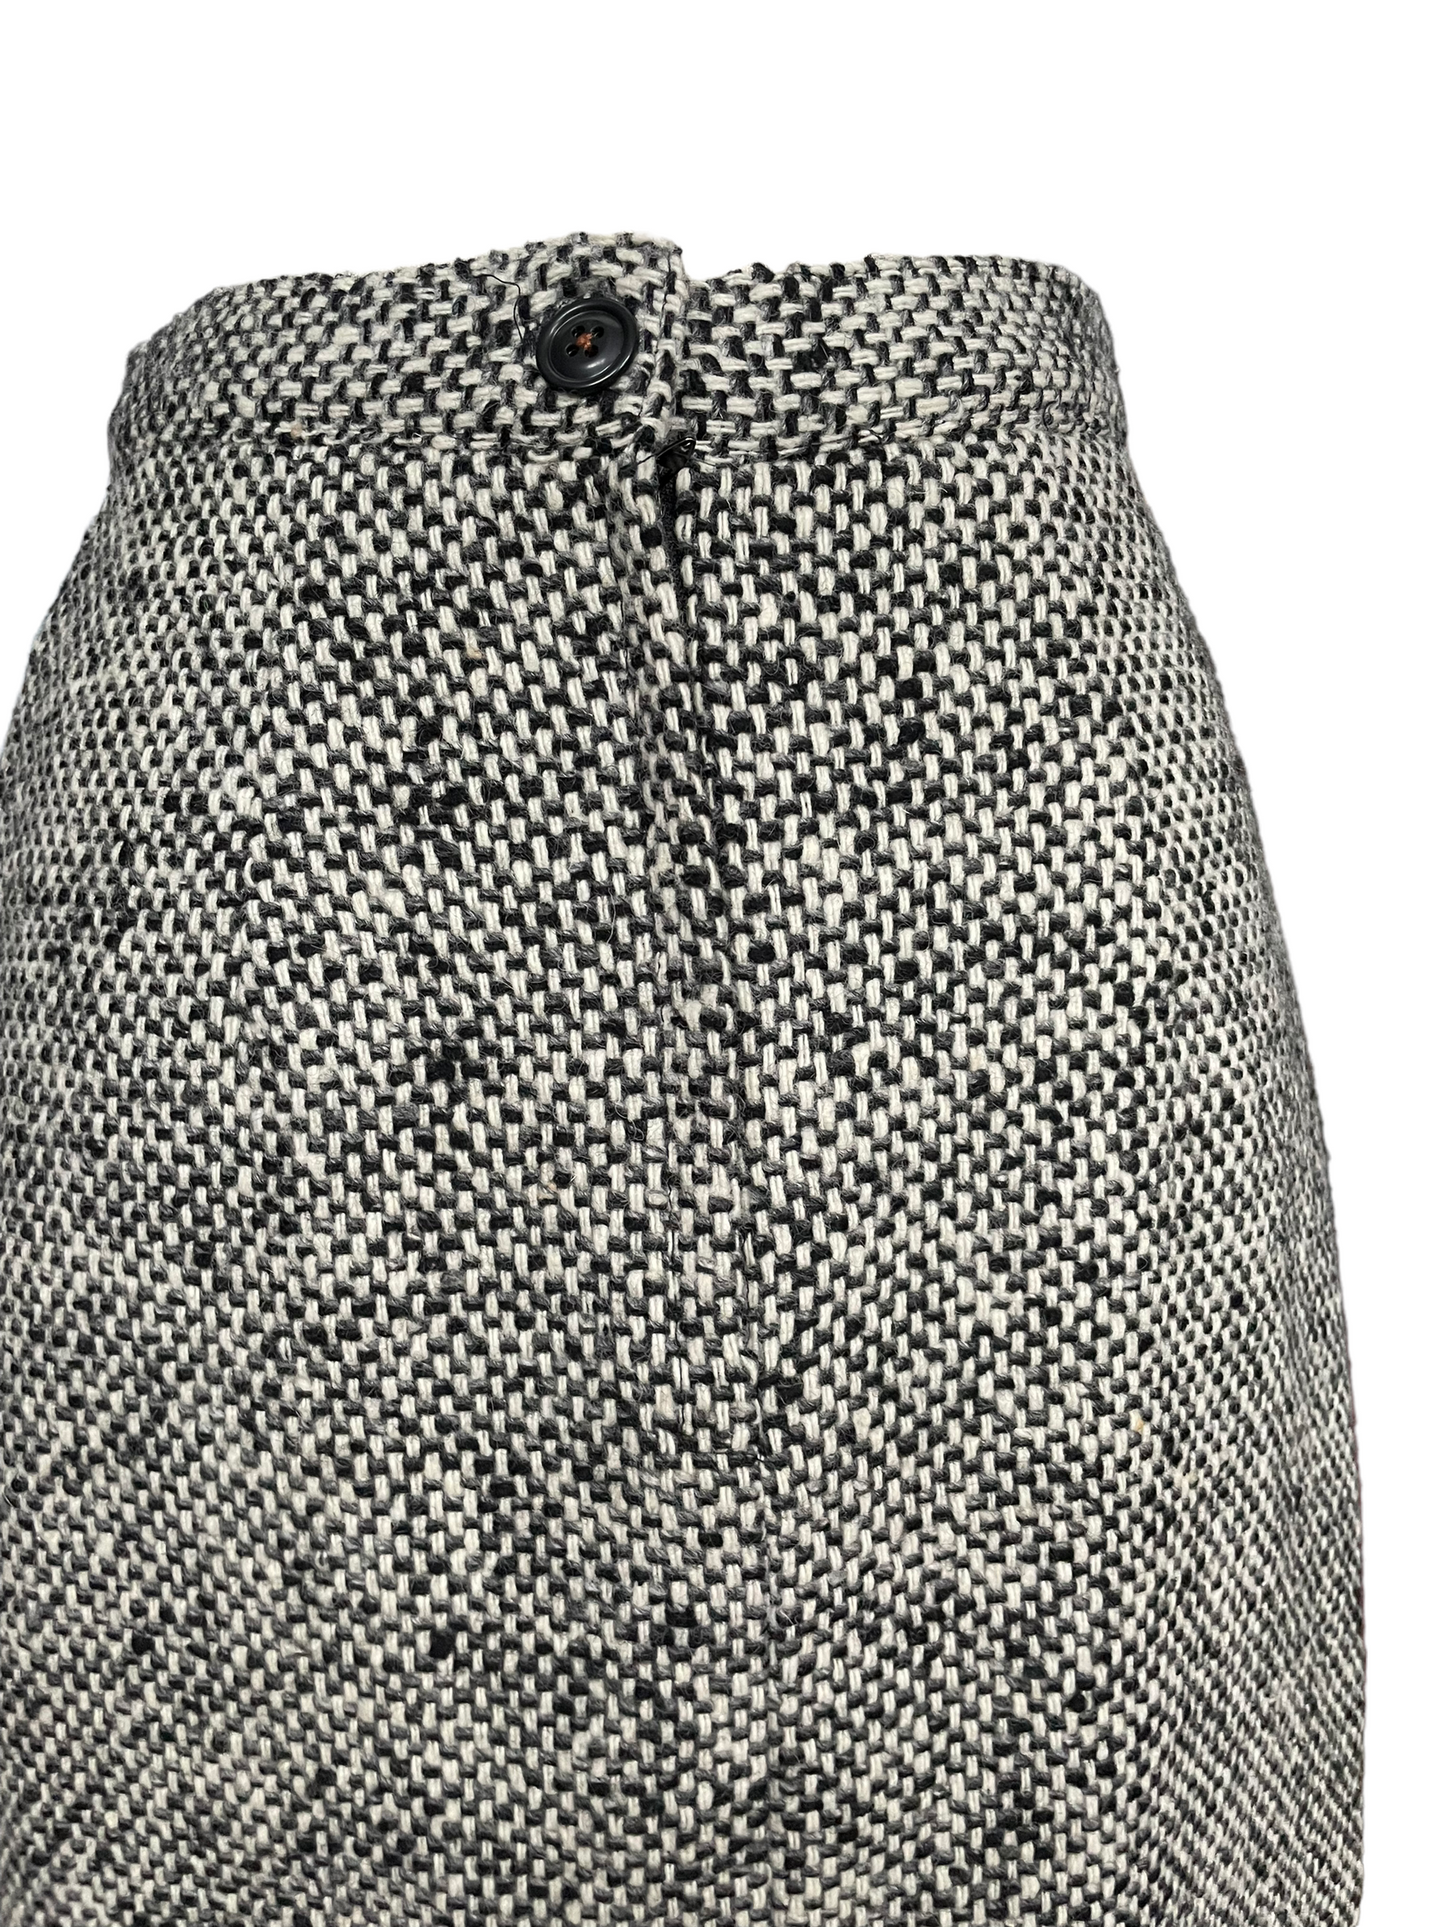 Back button view of Vintage 1980s Wool Tweed Skirt | Barn Owl Vintage | Seattle Ladies Vintage